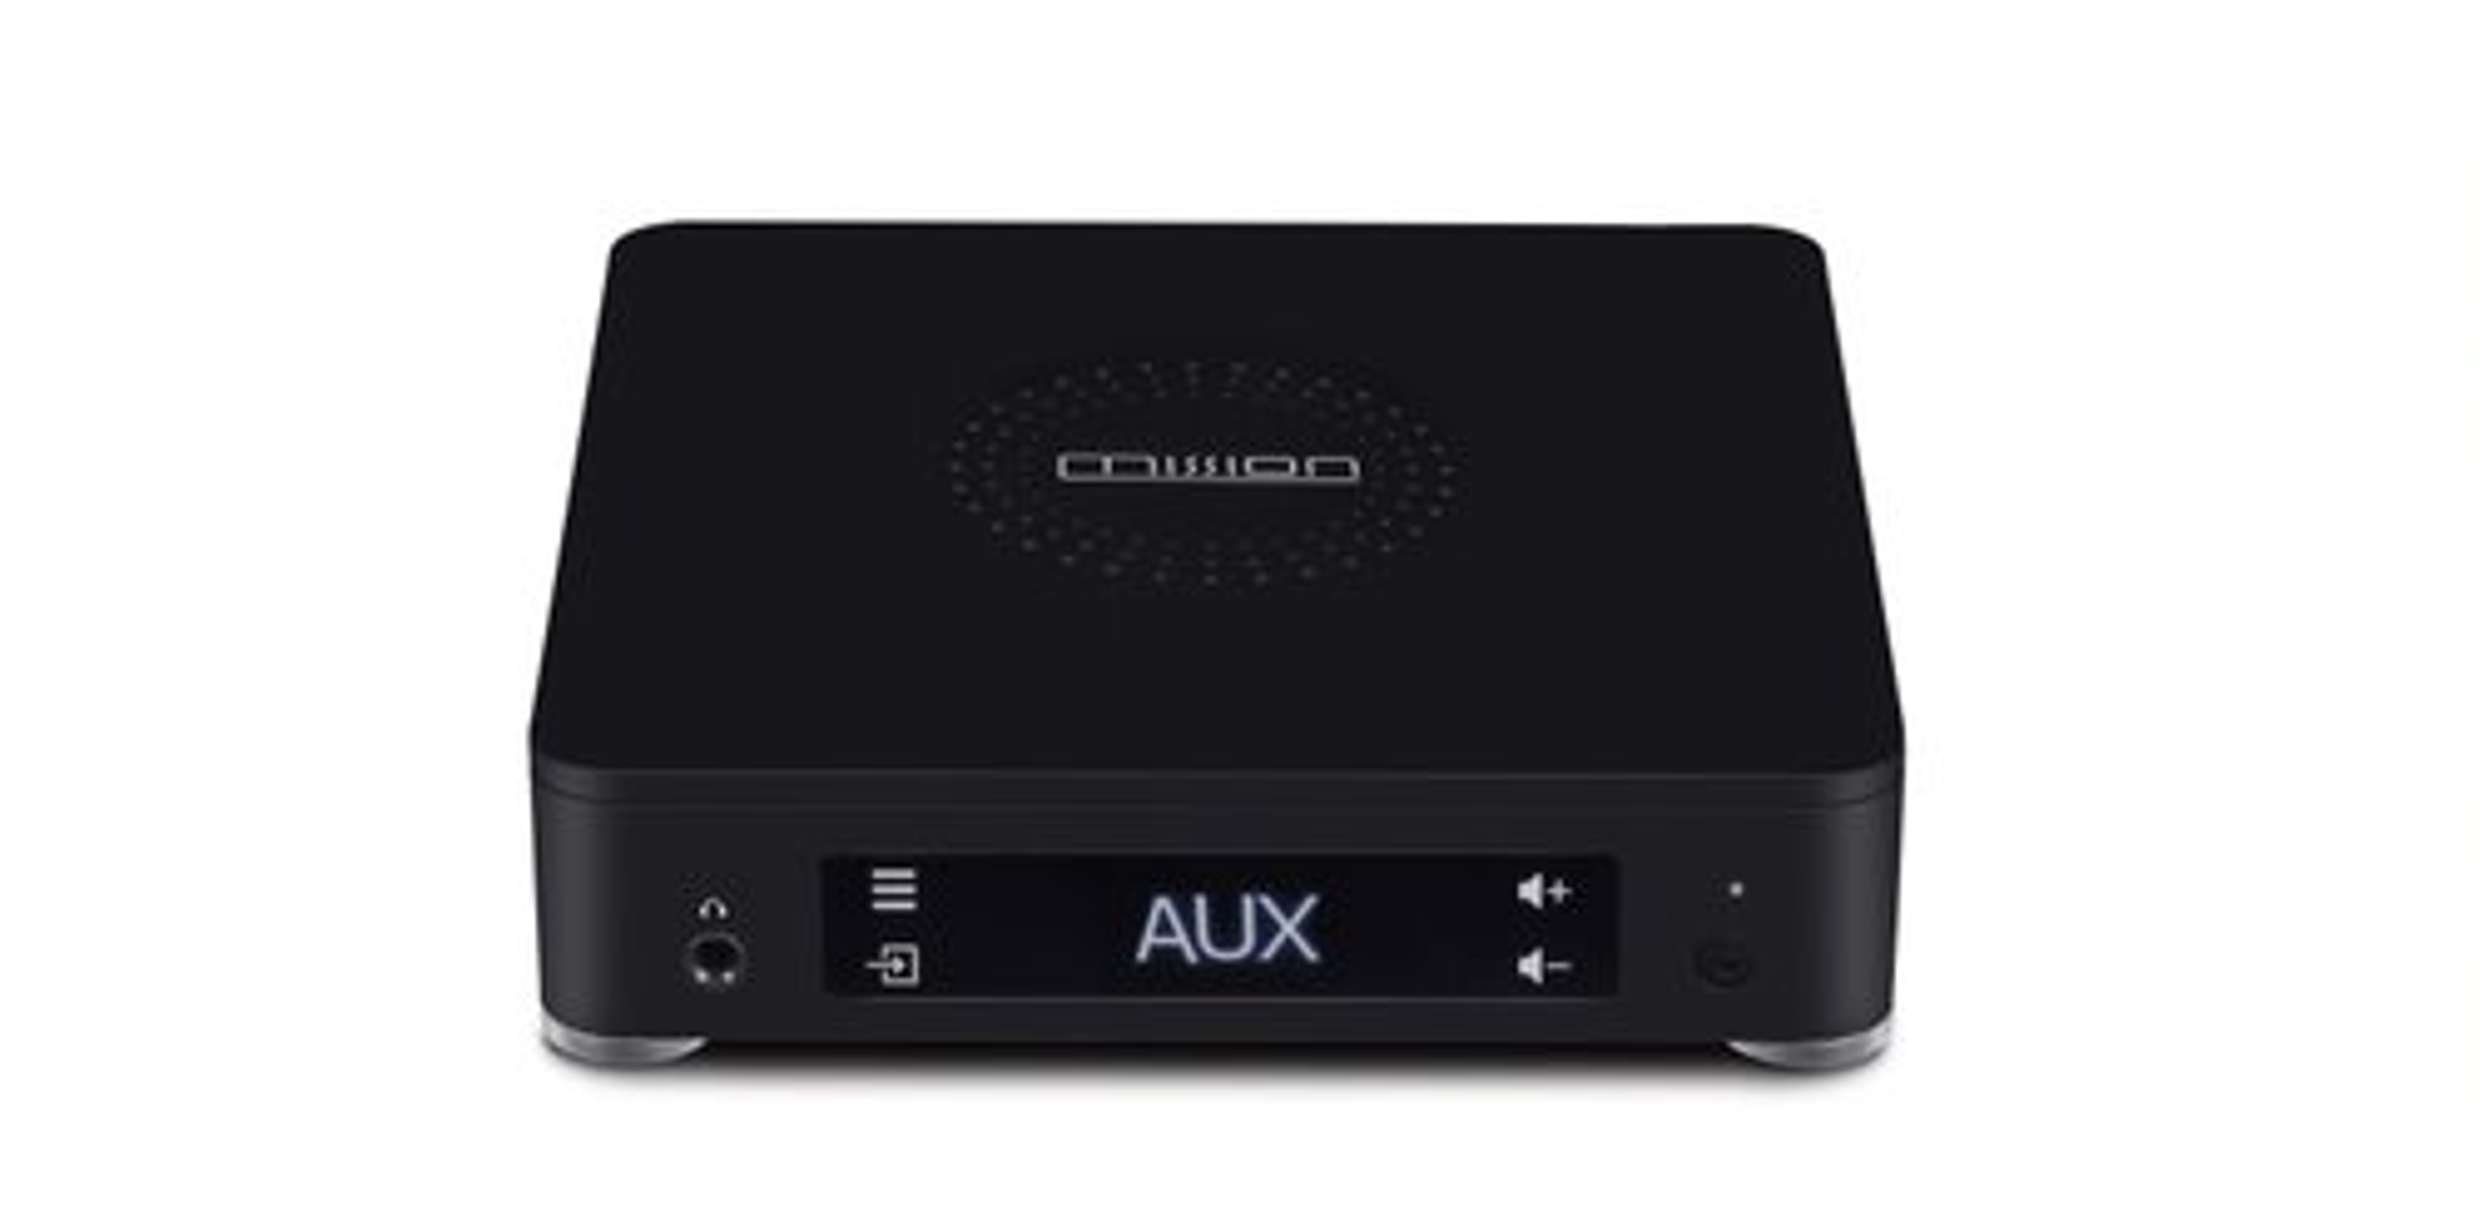 Mission Connect Lautsprecher Lautsprecher Lux LX Hub) Black kabellose und Wireless (2